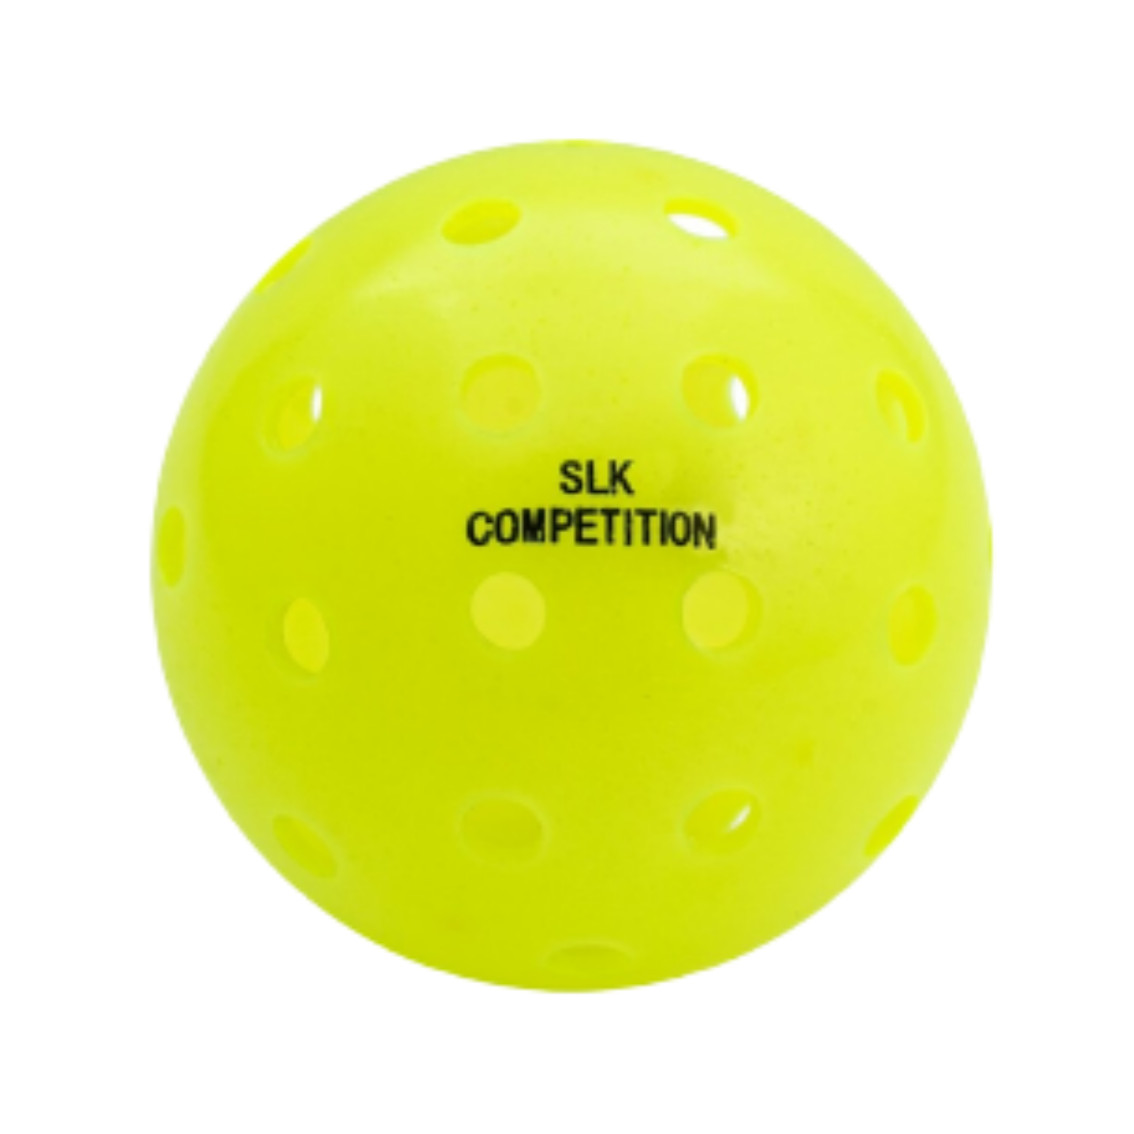 셀커크 셀커크 SLK 컴페티션 아웃도어 볼  12개(1세트), 6개(1세트) (SELKIRK SLK Competition Outdoor PICKLEBALL)